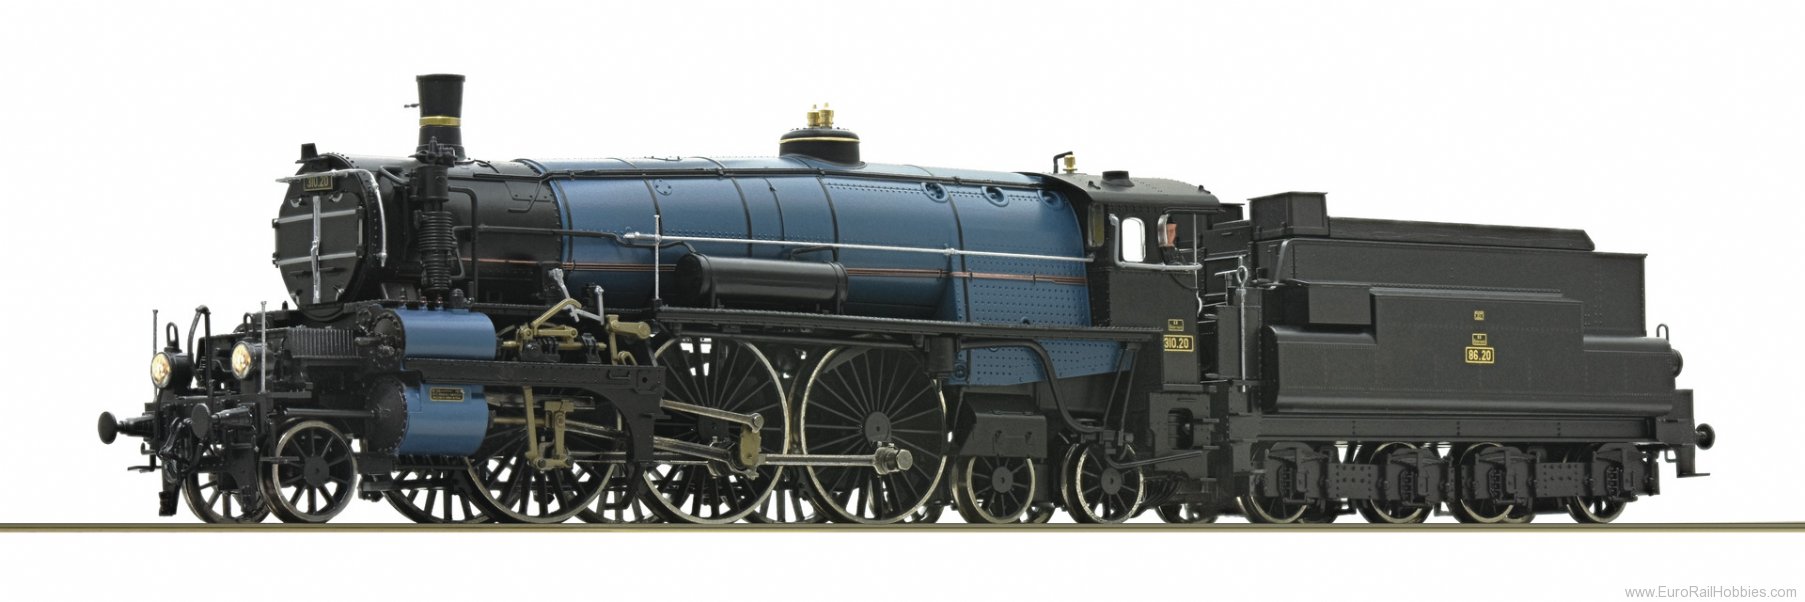 Roco 70330 Steam locomotive 310.20, BBÃ (DC Analog) (